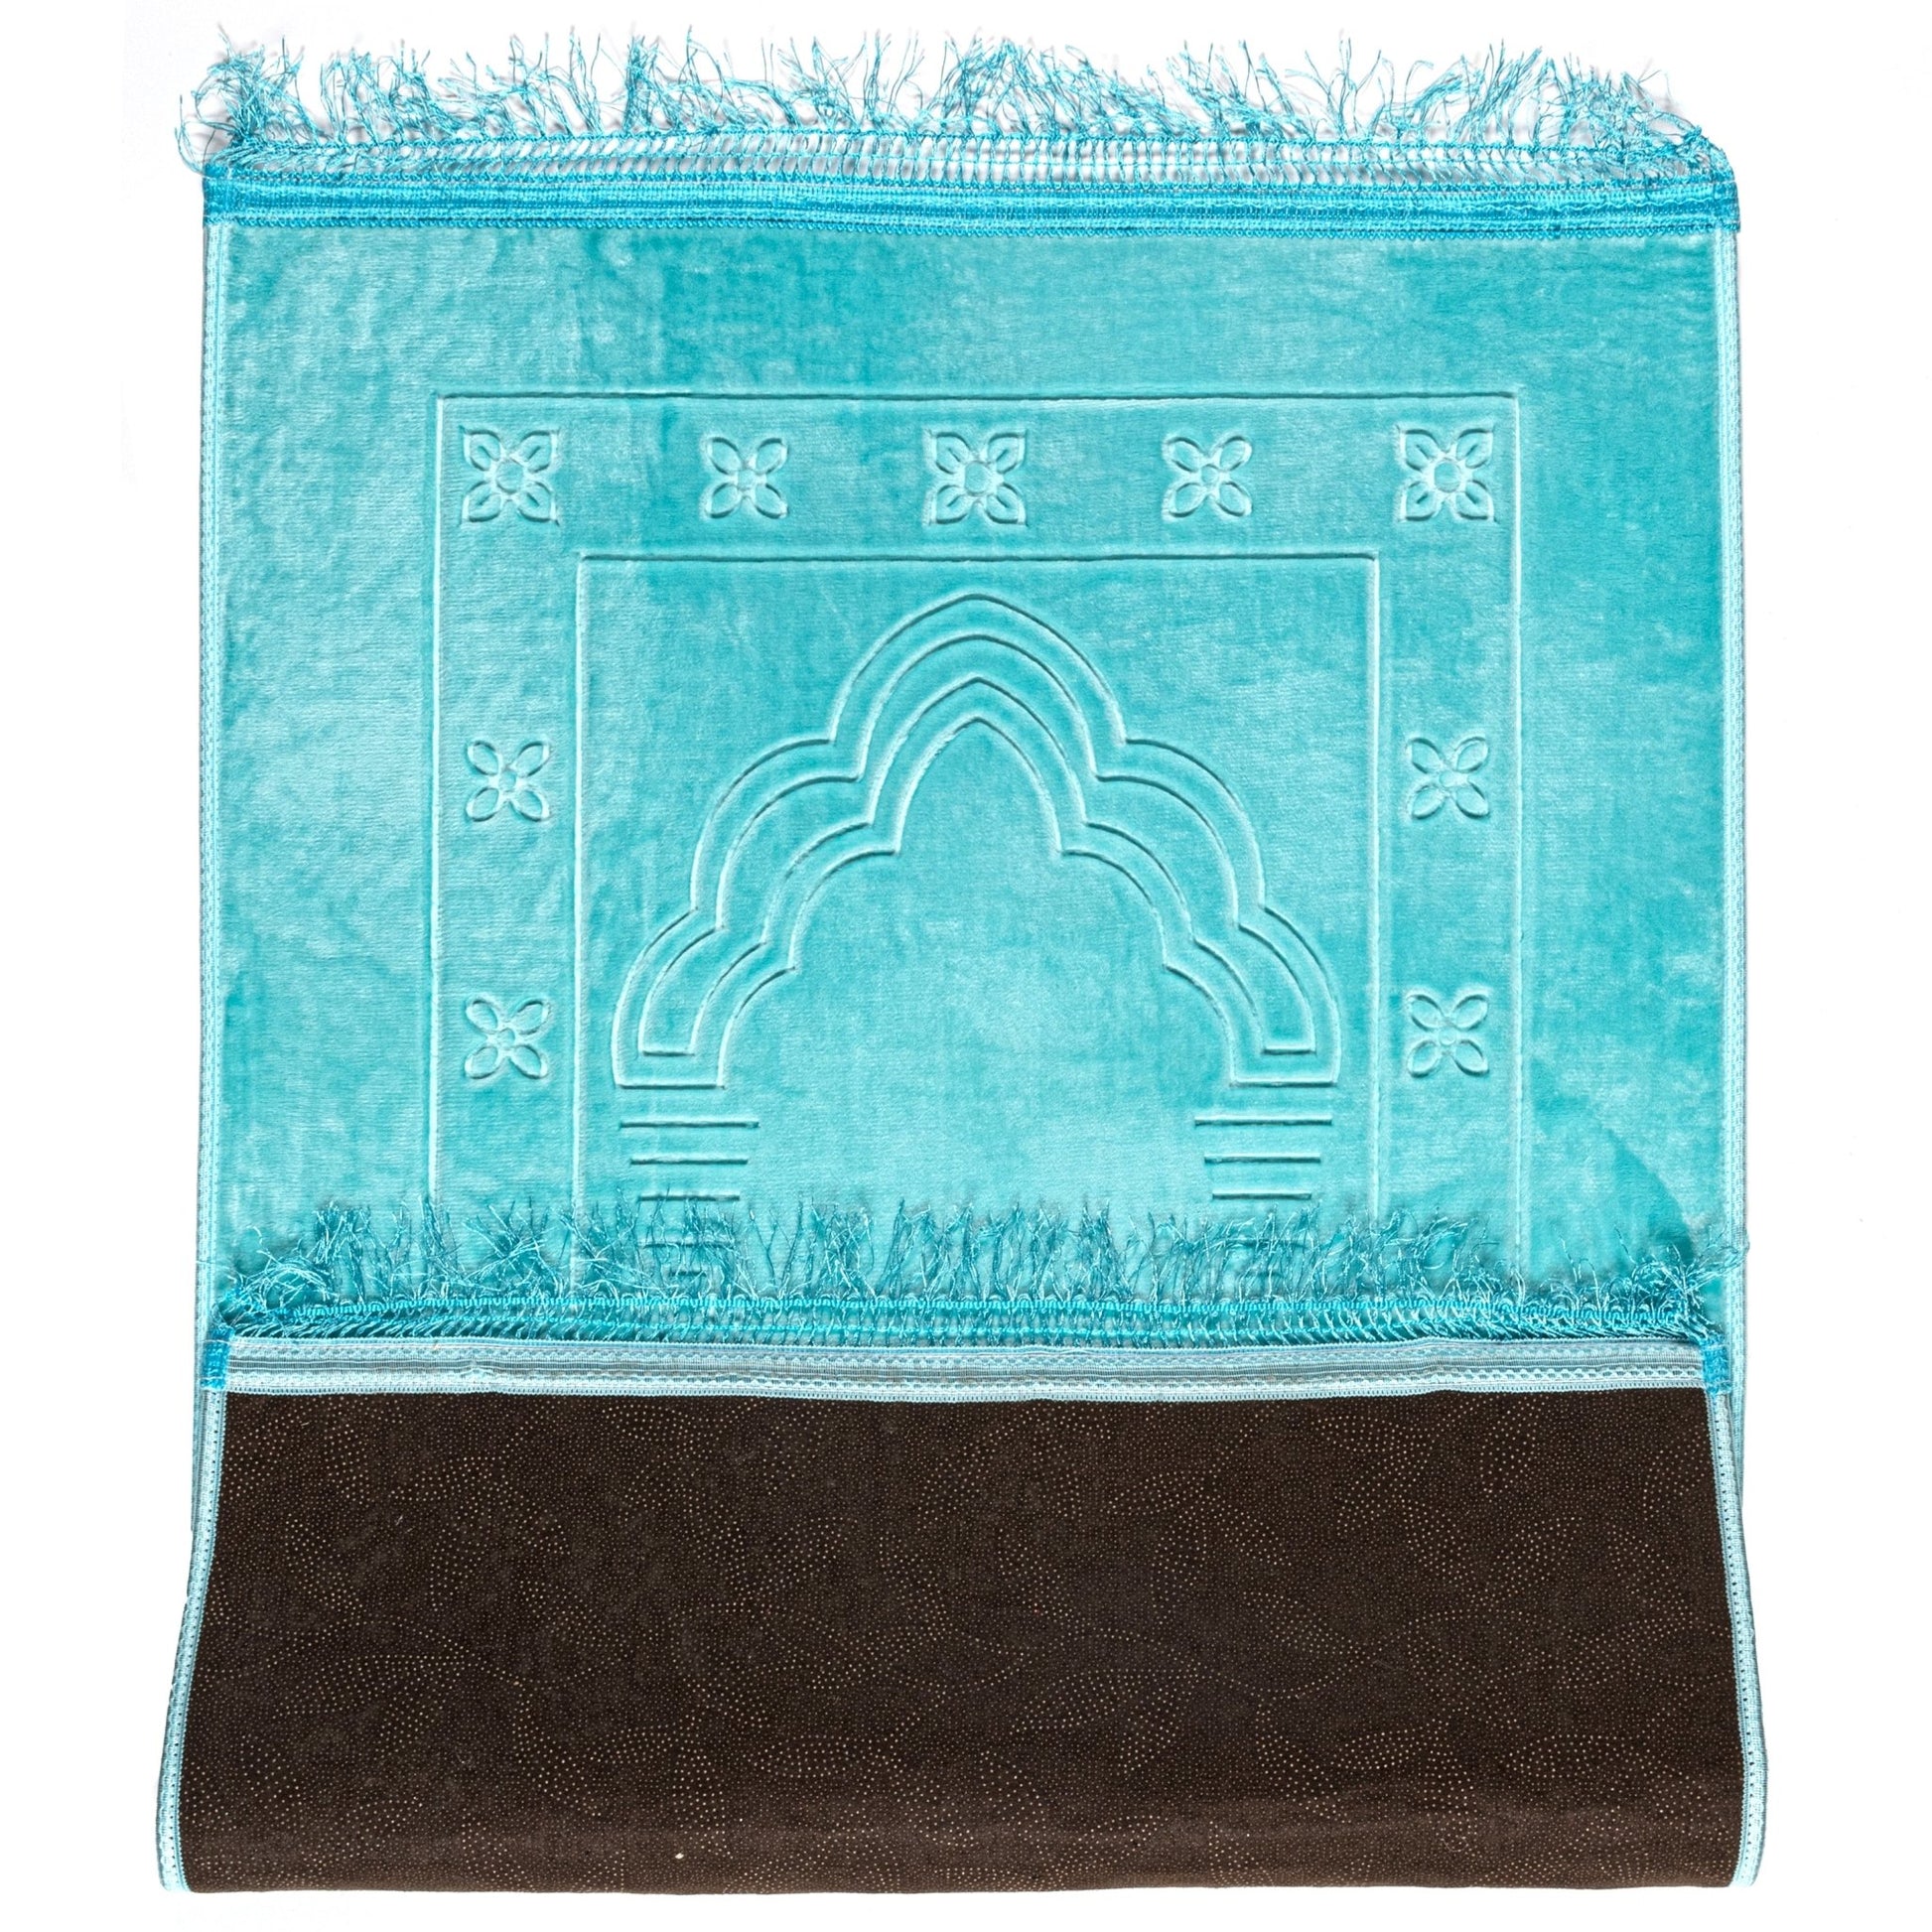 Gebetsteppich in Farbe Pastellblau, mit Muster, mit rutschfestem Untergrund